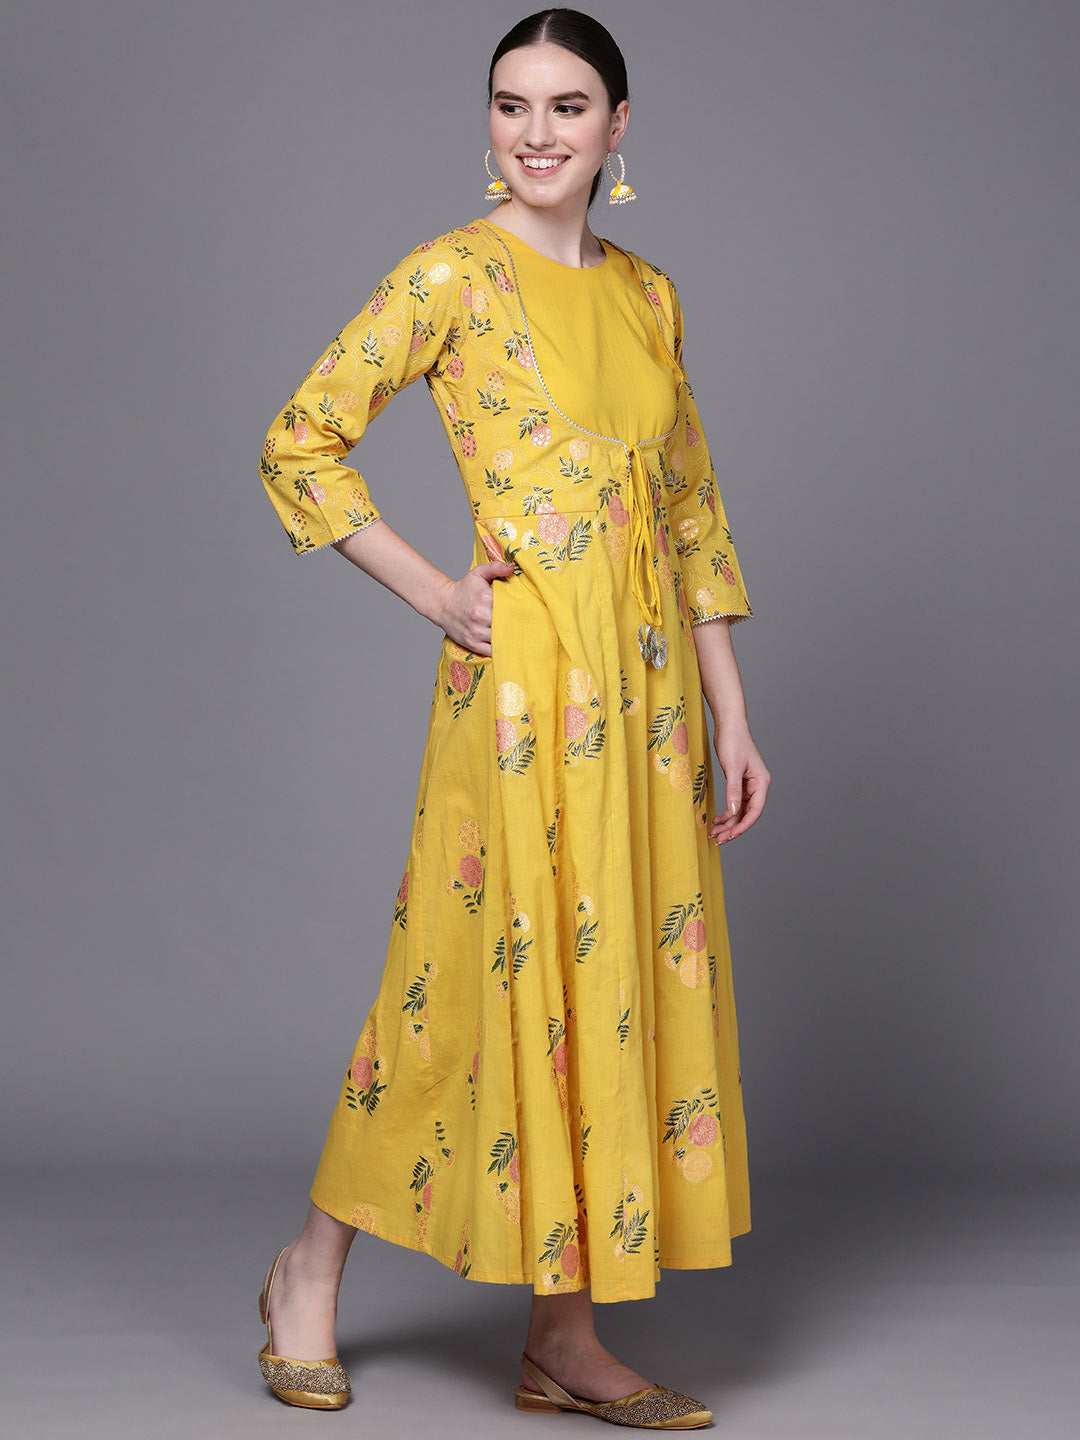 Summer new women's dress retro ethnic embroidered yellow waist seal dress  travel vacation desert beach long dress send headscarf